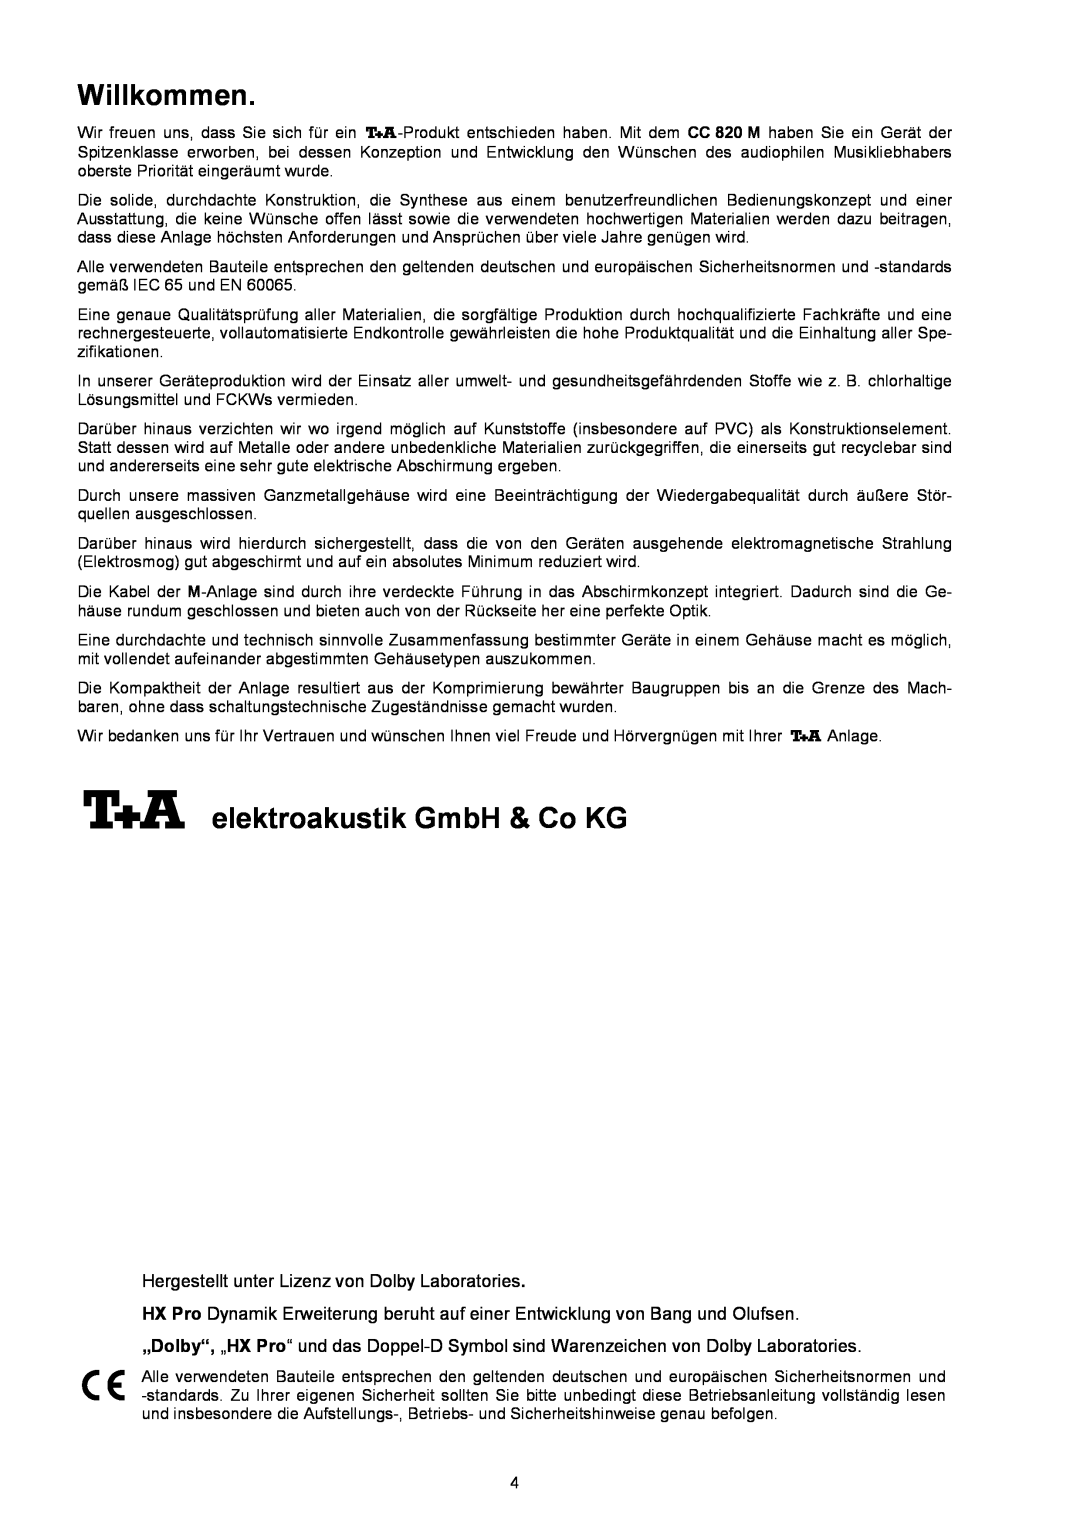 T+A Elektroakustik CC 820 M user manual Willkommen, elektroakustik GmbH & Co KG 